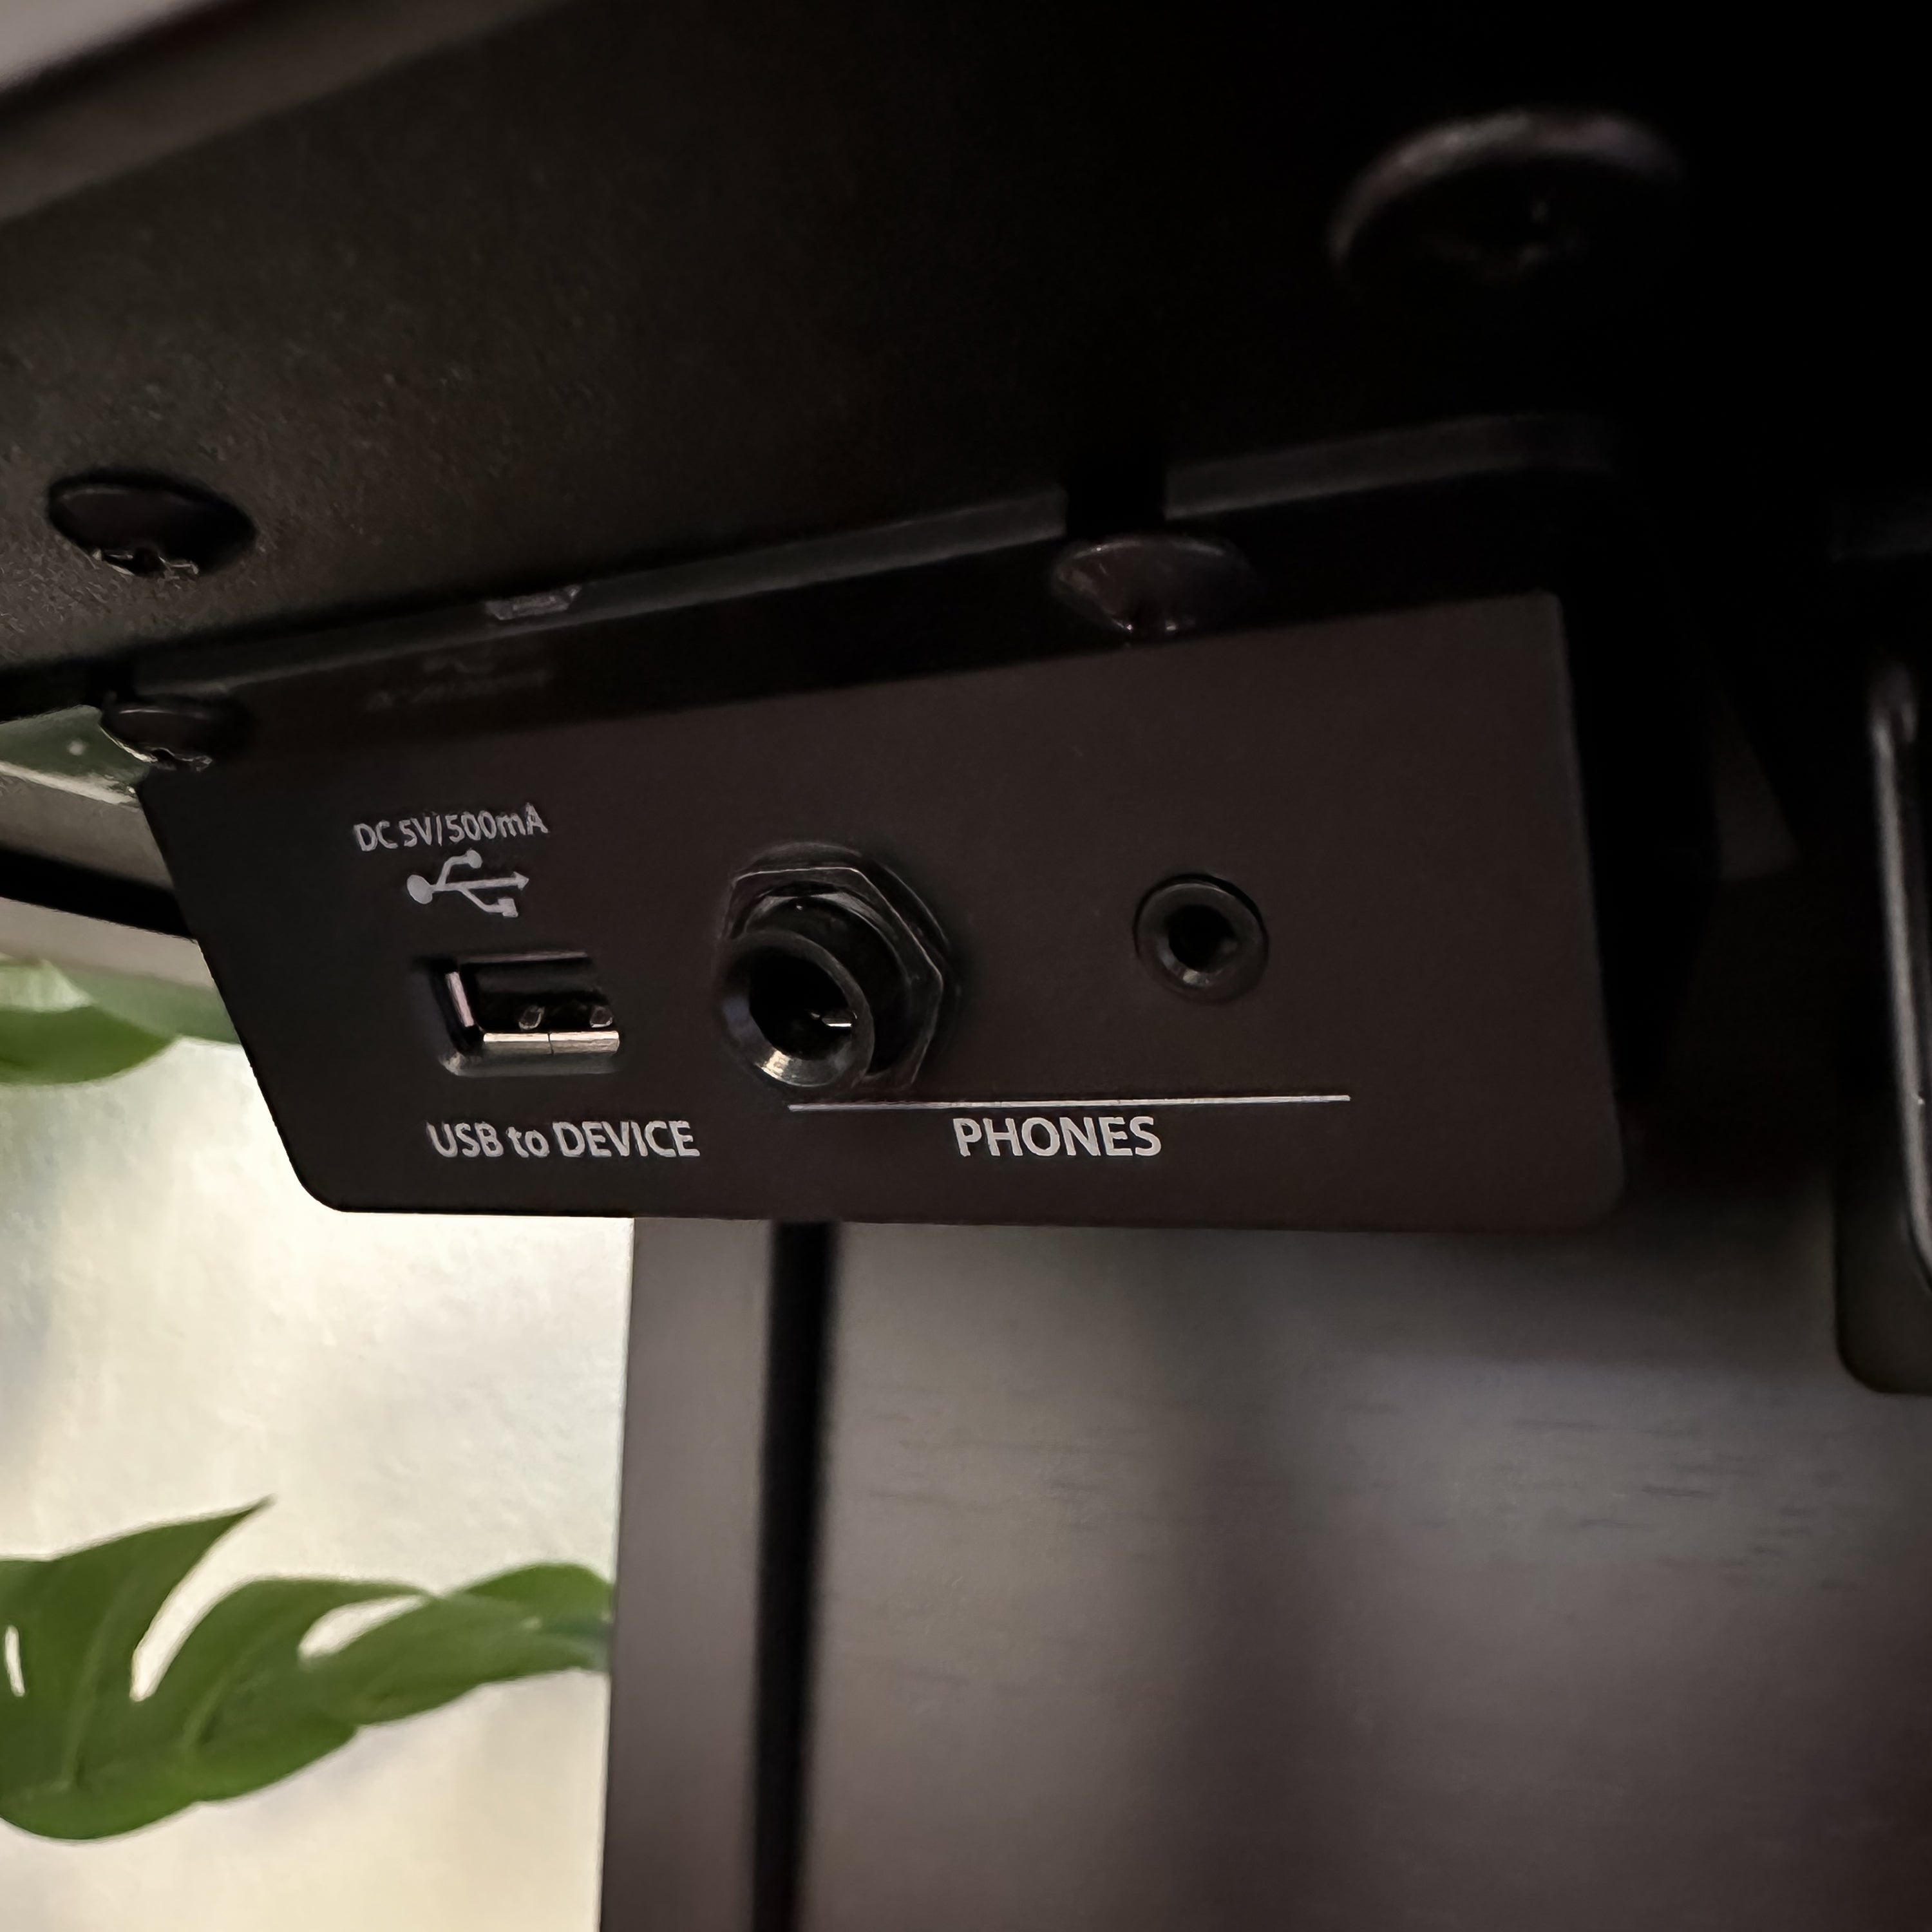 Kawai CA701 Digital Piano - Rosewood - USB and headphone jacks